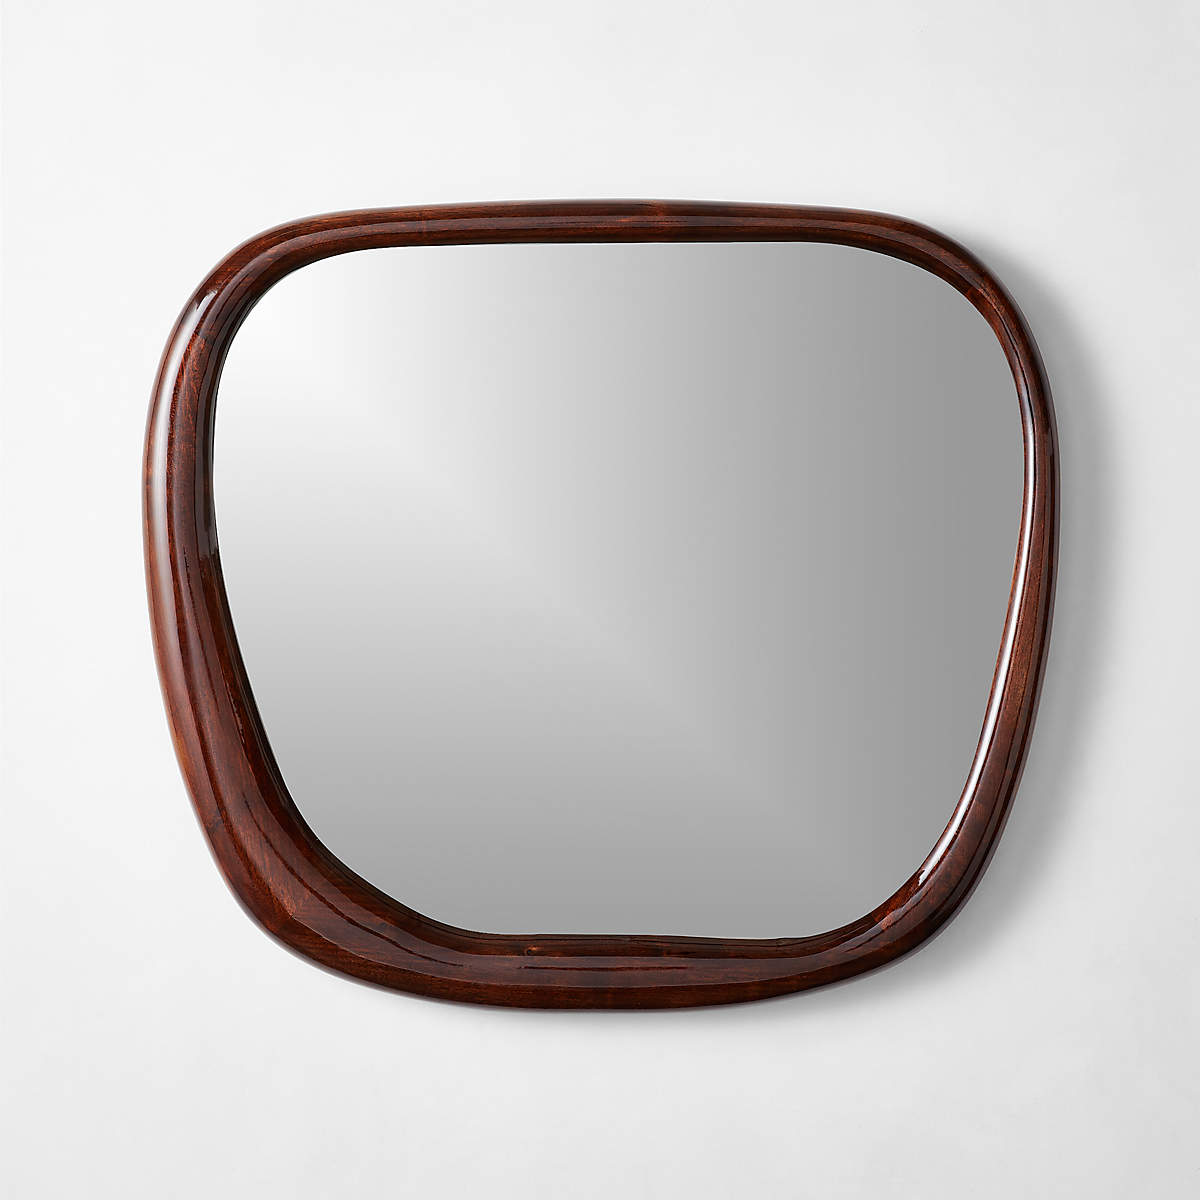 meriti-polished-walnut-wood-wall-mirror-30x32.jpg